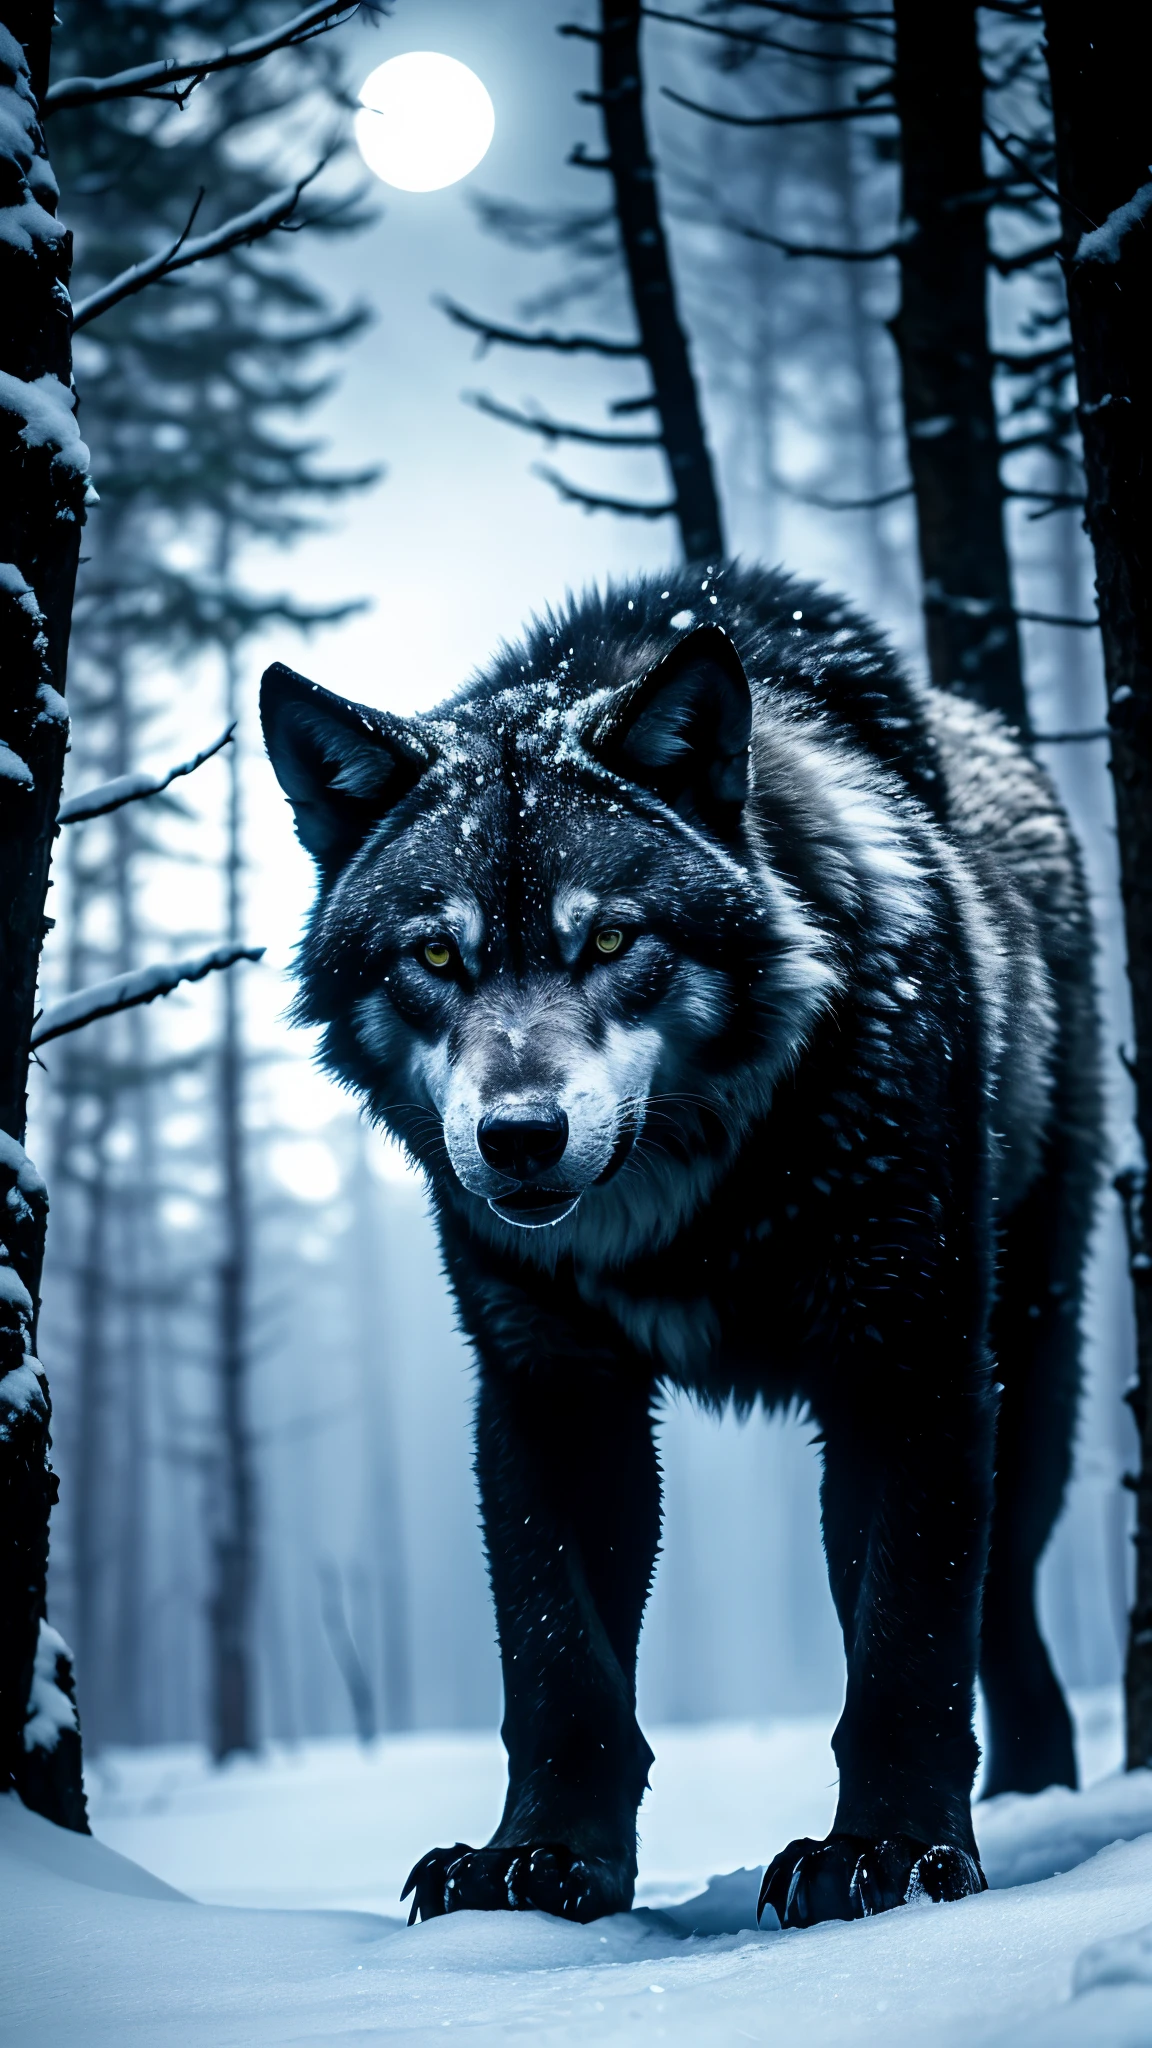 Lobo blanco, bosque oscuro, Hielo de nieve, blue eyes, atmósfera misteriosa, luz de la luna, pelaje negro, expresión feroz, presencia intimidante, caza nocturna, movimientos sigilosos, aullido inquietante, salvaje e indomable, físico poderoso, silueta de medianoche, sombras siniestras, Instinto primario, ancient legend, depredador alfa, mesmerizing beauty, dinámica de la manada de lobos, majestuoso desierto